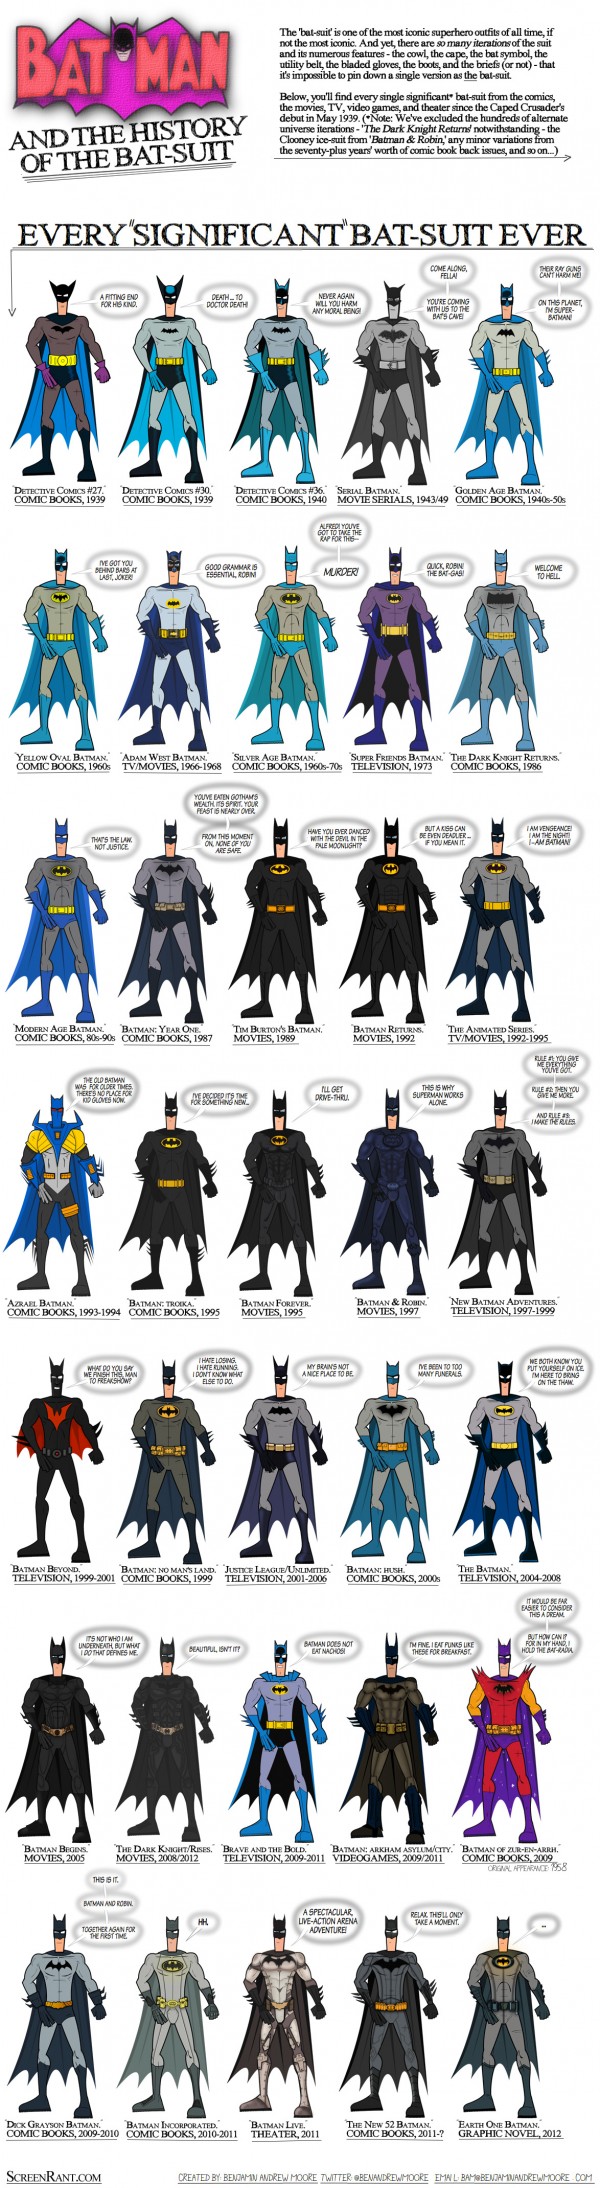 Batman-suit-history-infographic-3